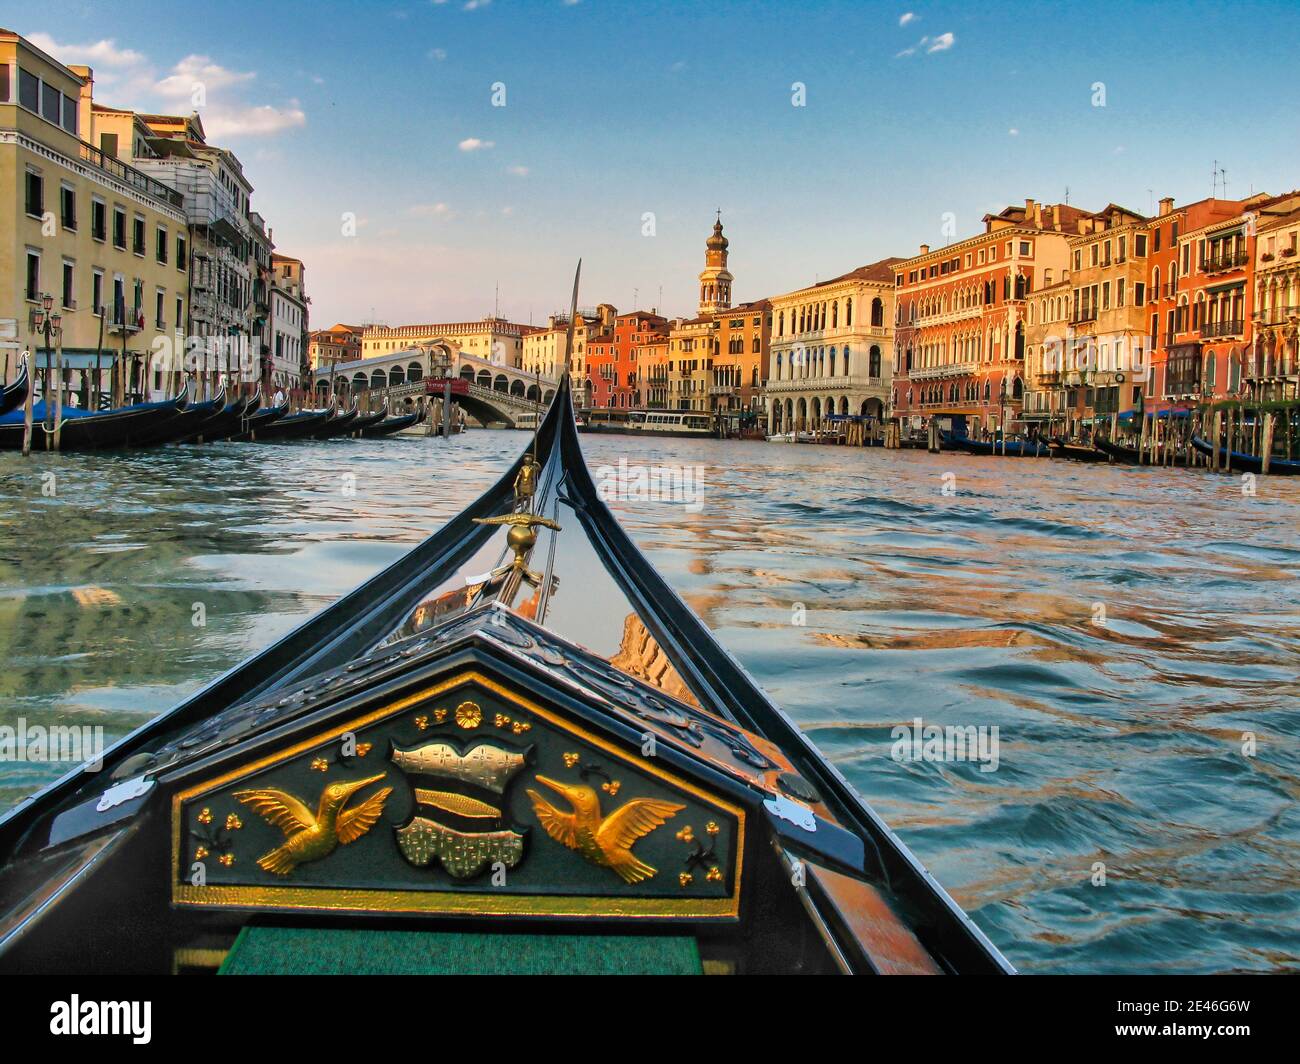 Un arco de góndola, con el famoso puente de Rialto en el fondo, cruceros por el Gran Canal de Venecia Foto de stock